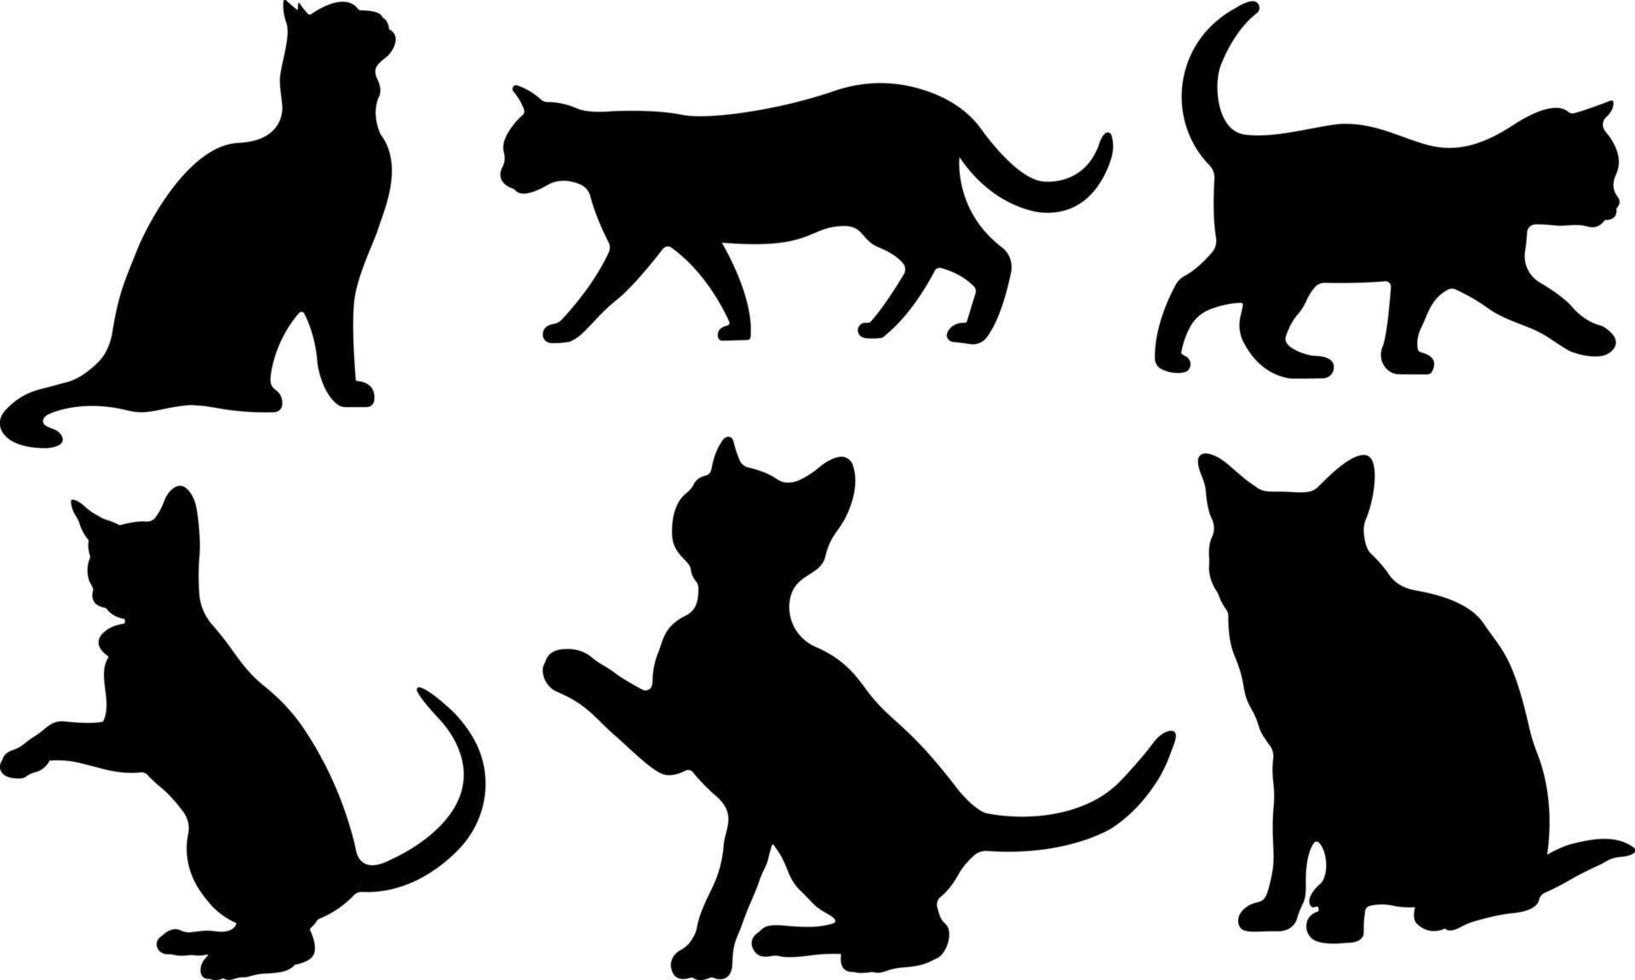 arquivos vetoriais de silhueta negra de gato vetor